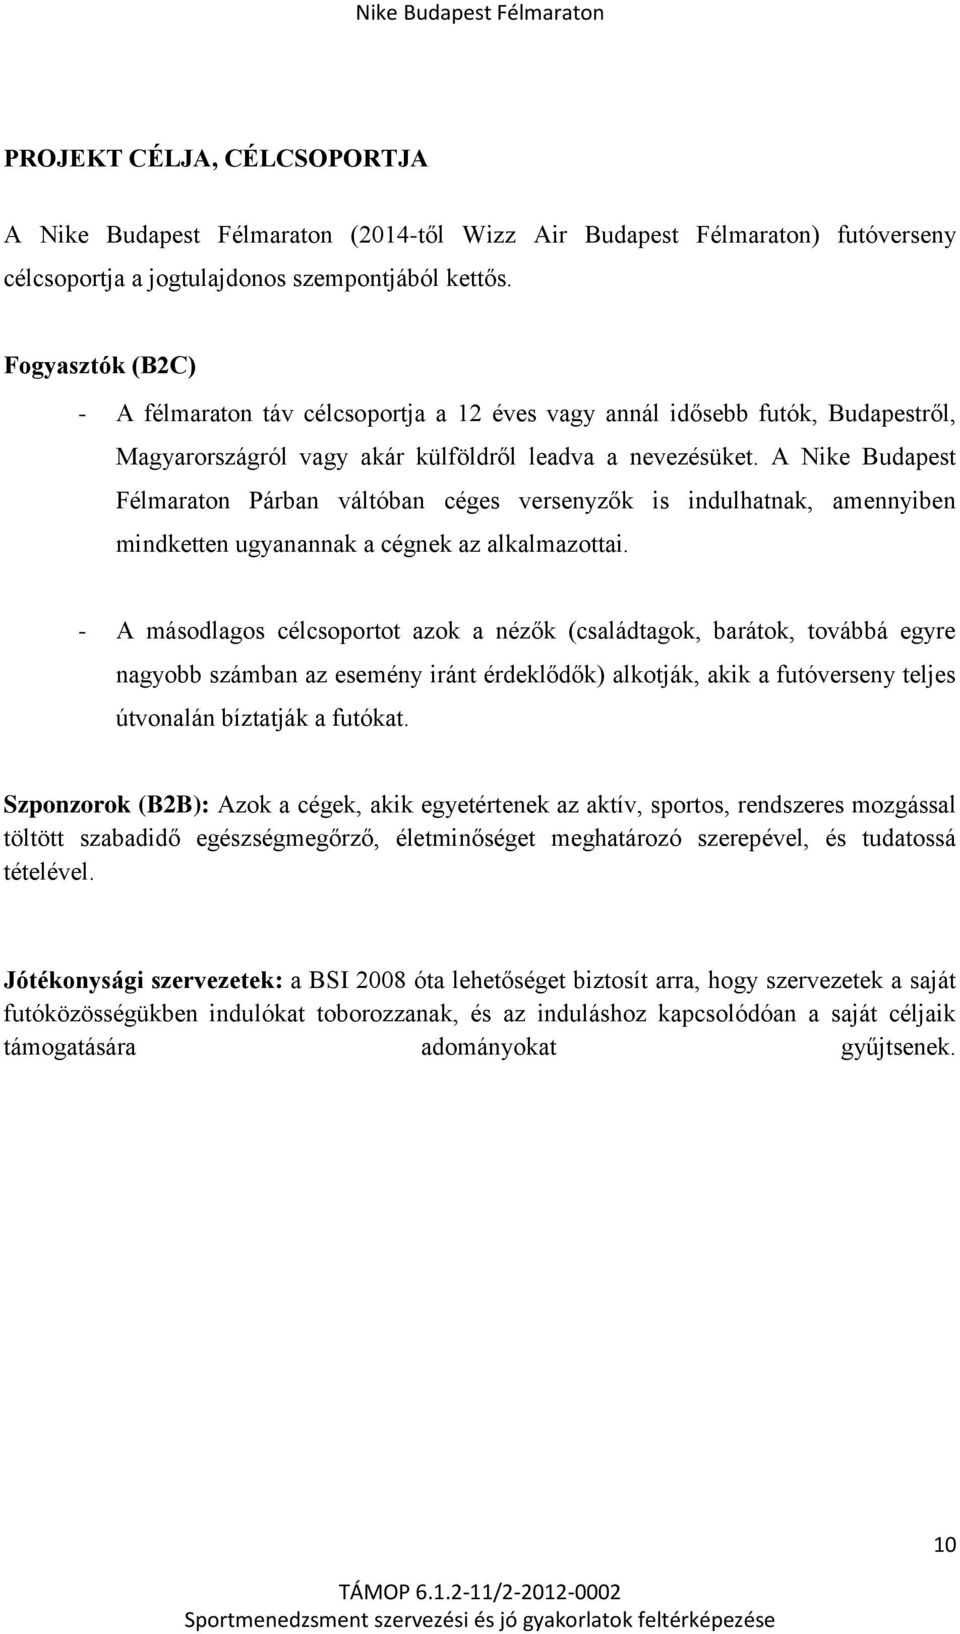 ESETTANULMÁNY. A fizikai aktivitás és a sport magyarországi dimenzióinak  feltárása. TÁMOP-6.1.2/11/ kódszámú projekt - PDF Ingyenes letöltés